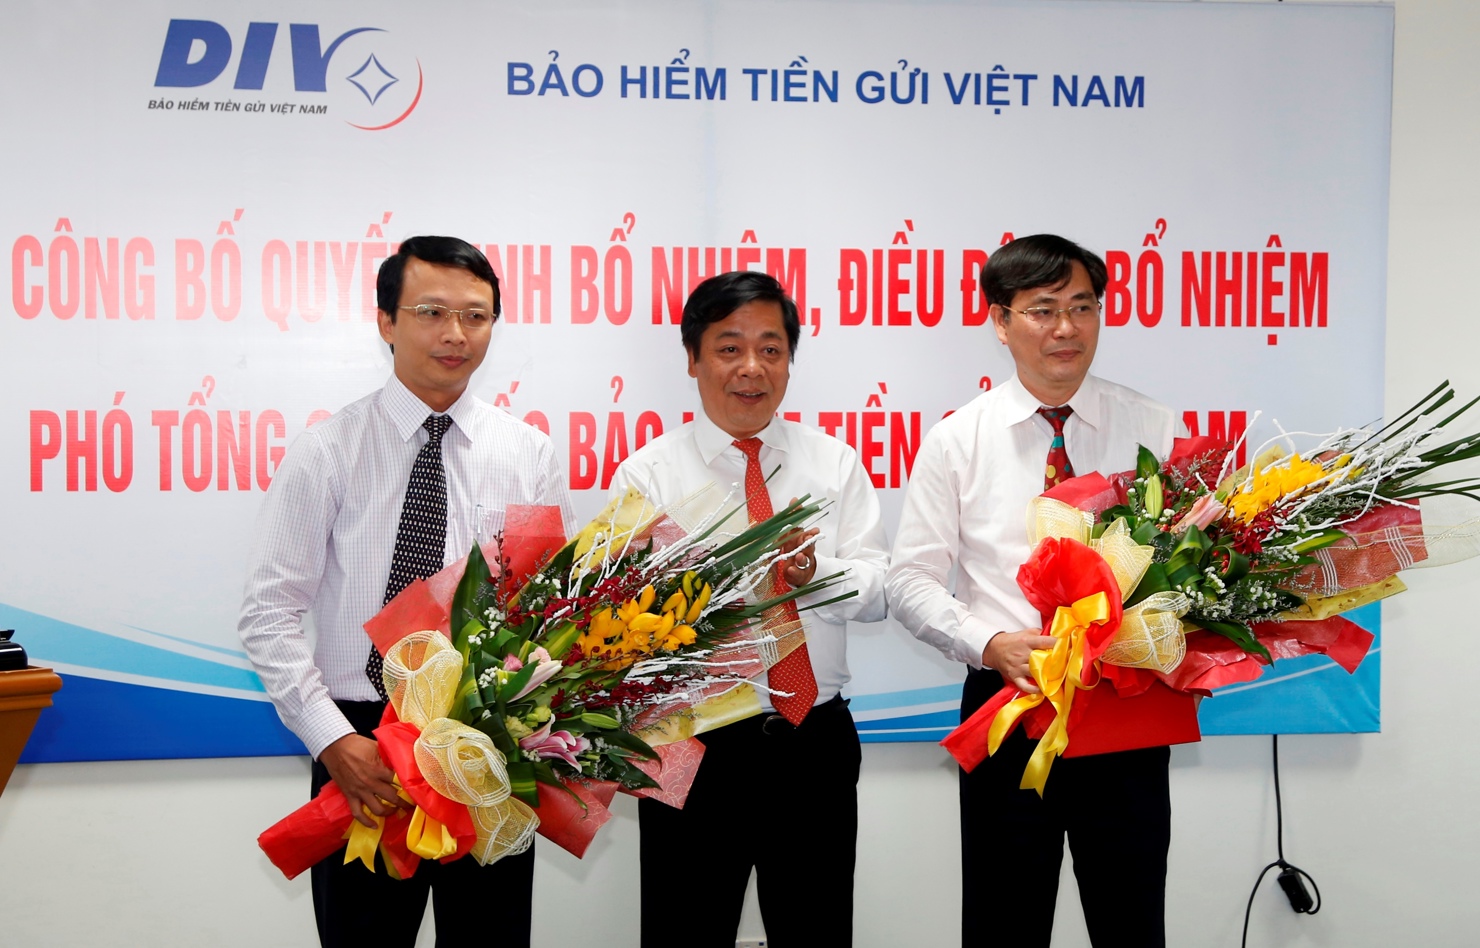 Bảo hiểm tiền gửi Việt Nam đã có 2 Phó tổng giám đốc mới